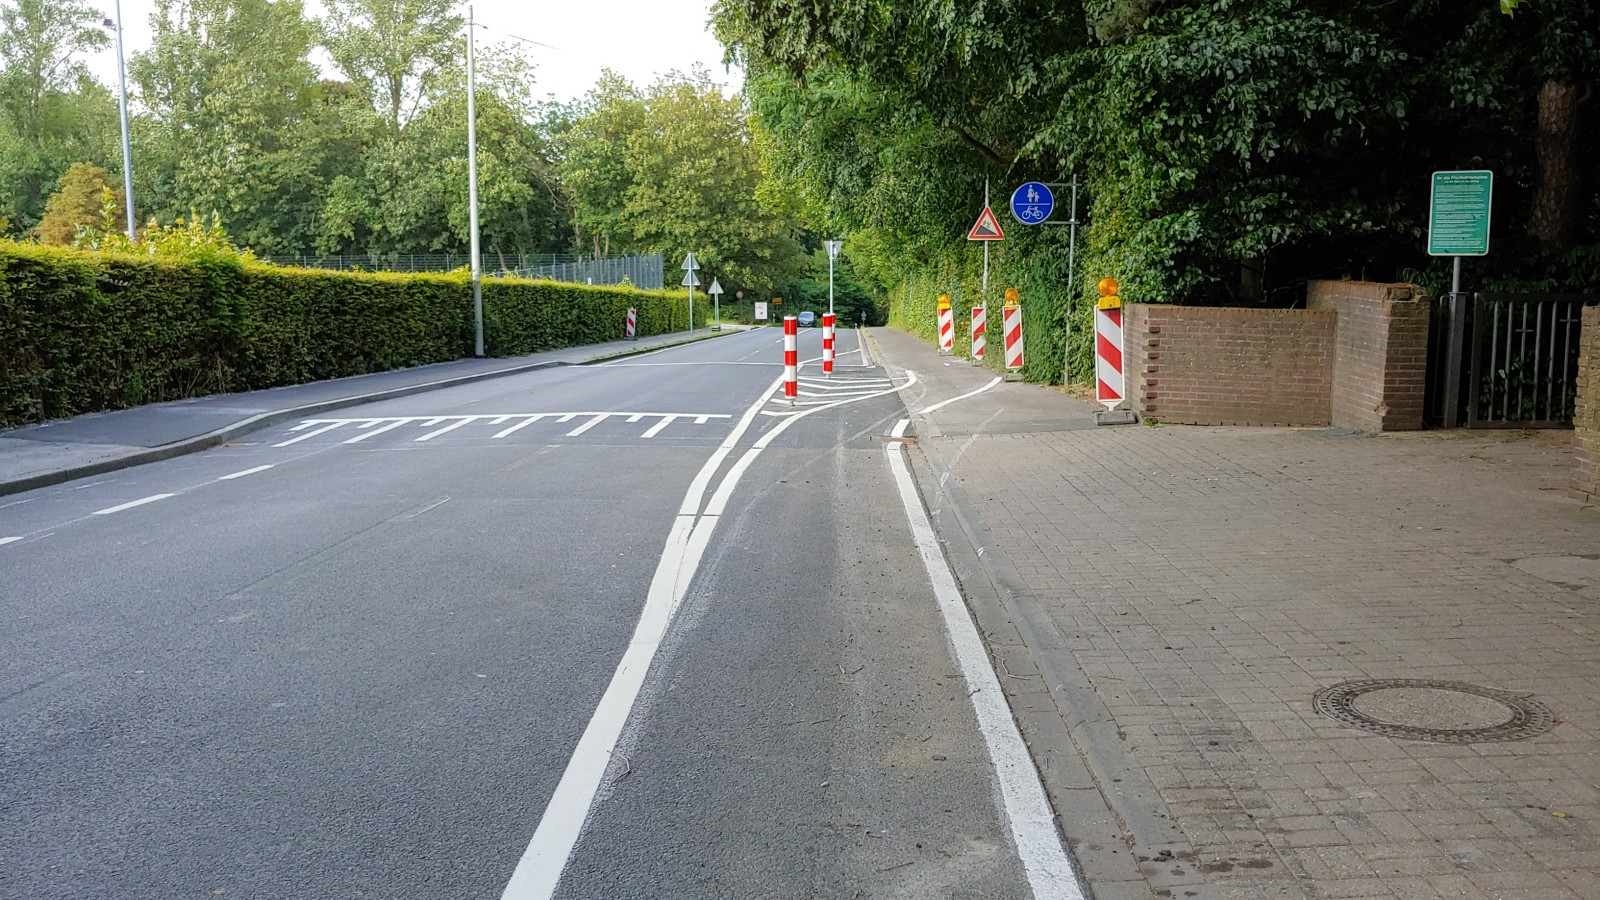 Bild: Fahrradschleuse auf der Oststraße in Kohlscheid